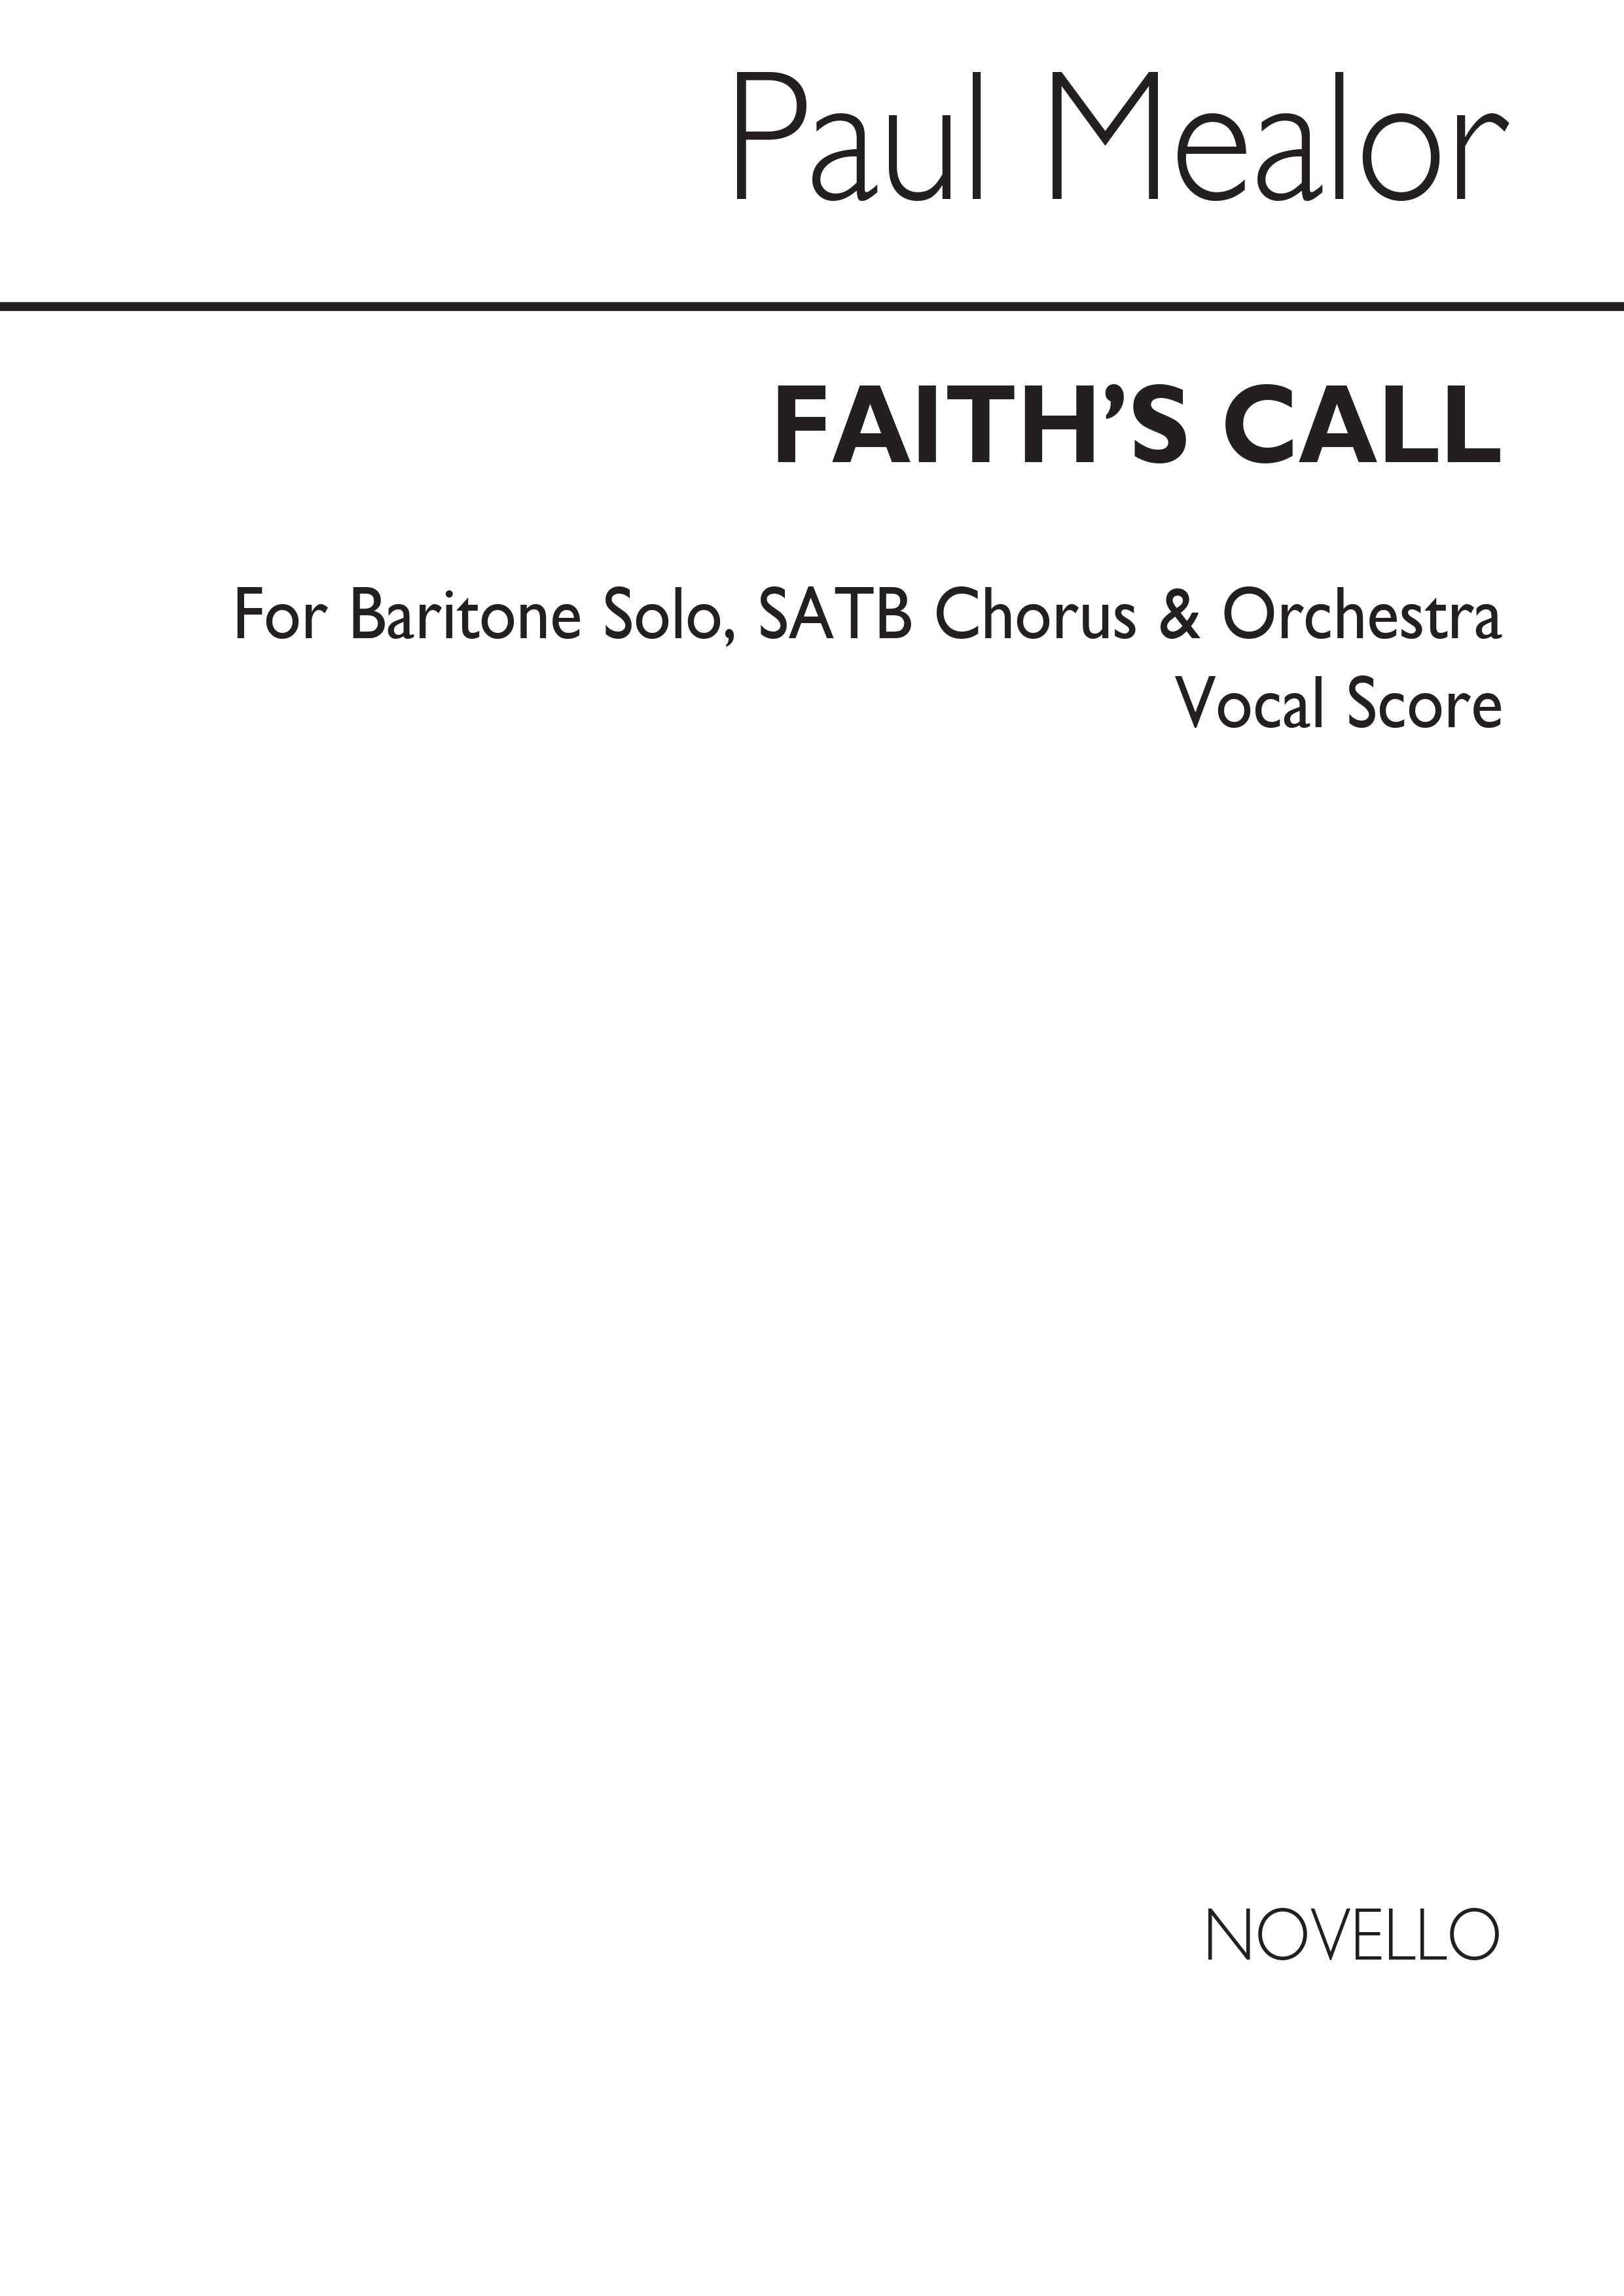 Paul Mealor: Faith's Call (Vocal Score)